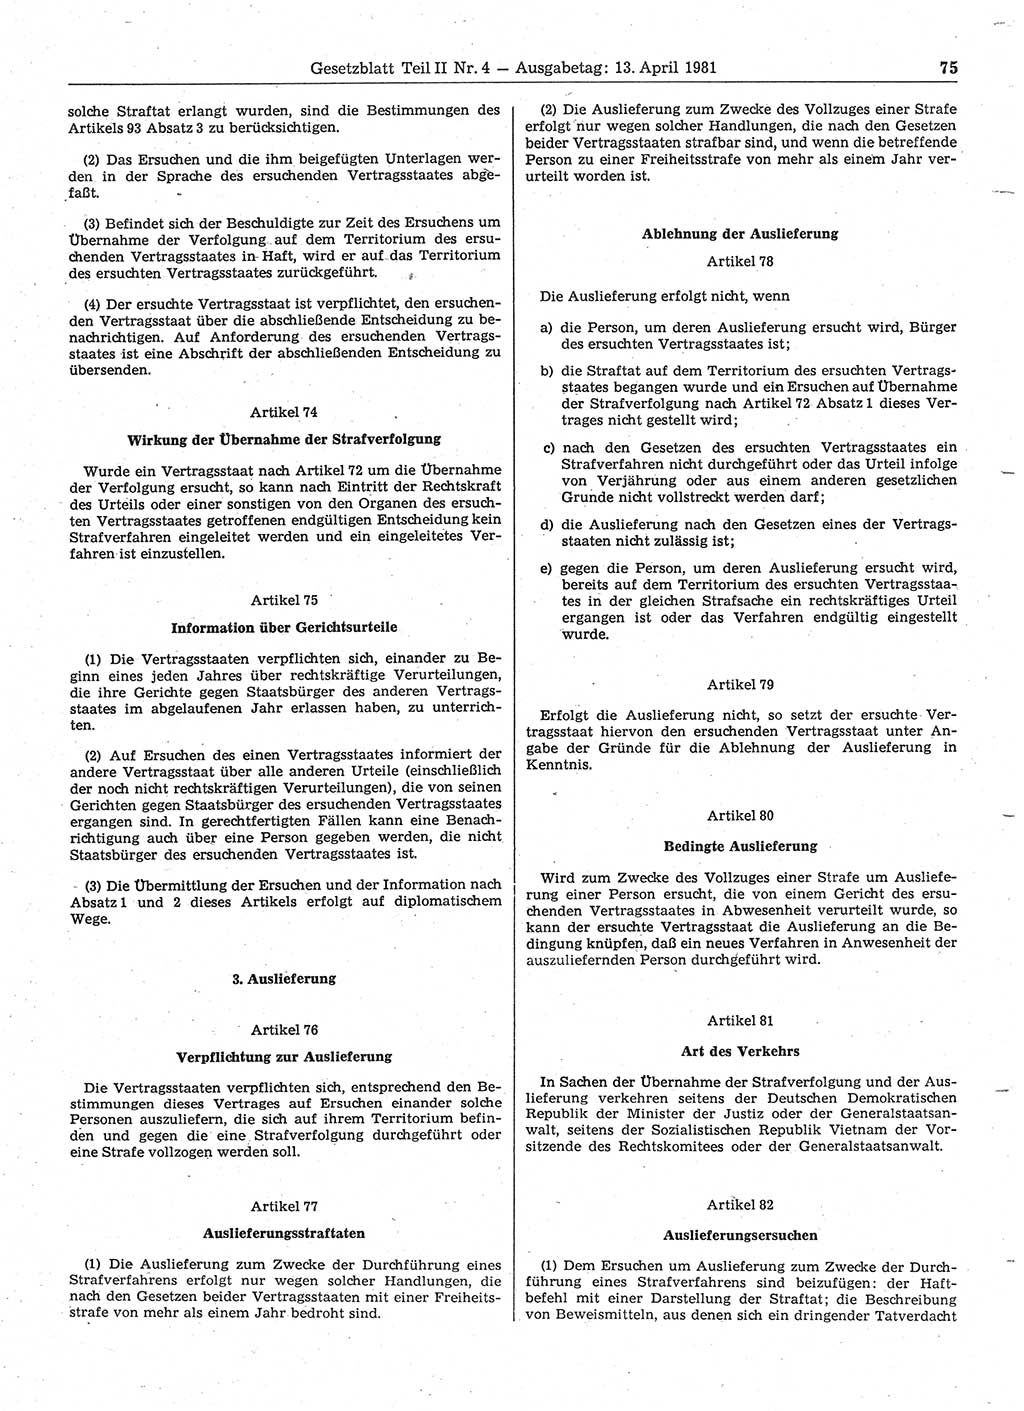 Gesetzblatt (GBl.) der Deutschen Demokratischen Republik (DDR) Teil ⅠⅠ 1981, Seite 75 (GBl. DDR ⅠⅠ 1981, S. 75)